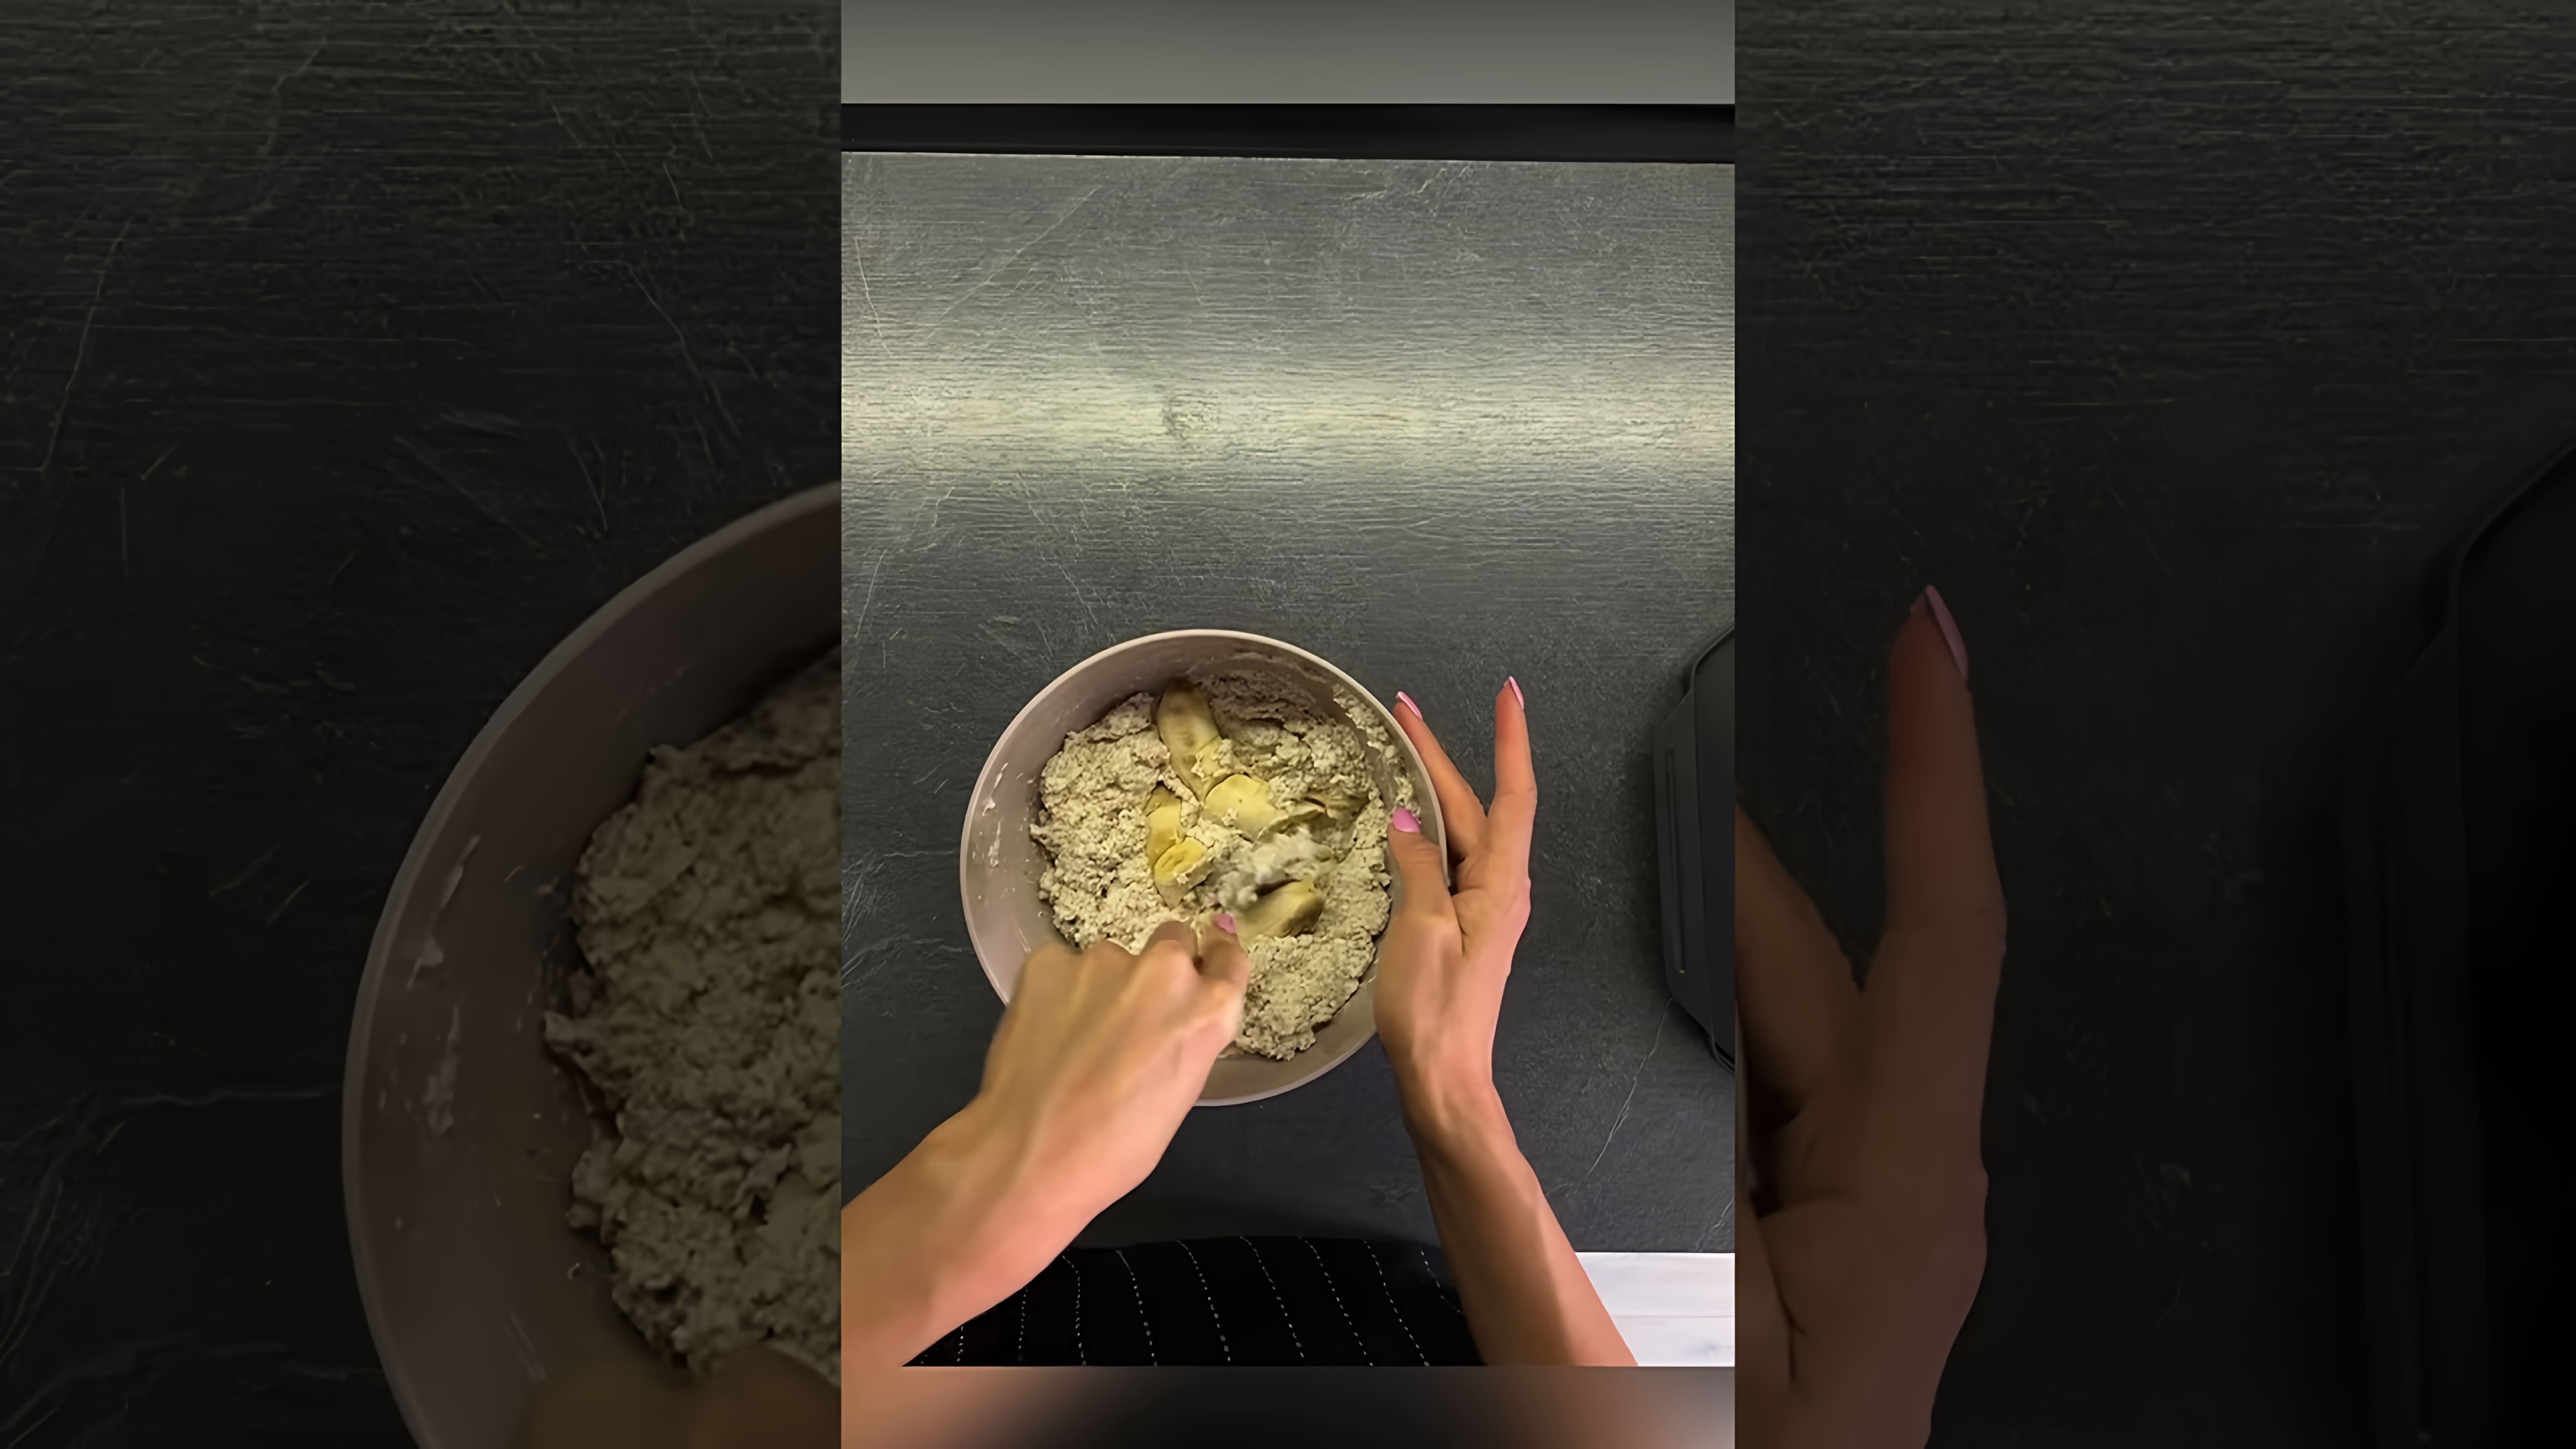 В этом видео-ролике рассказывается о рецепте приготовления вафель из зелёной гречки, который подходит для людей, придерживающихся безглютеновой диеты и веганского образа жизни